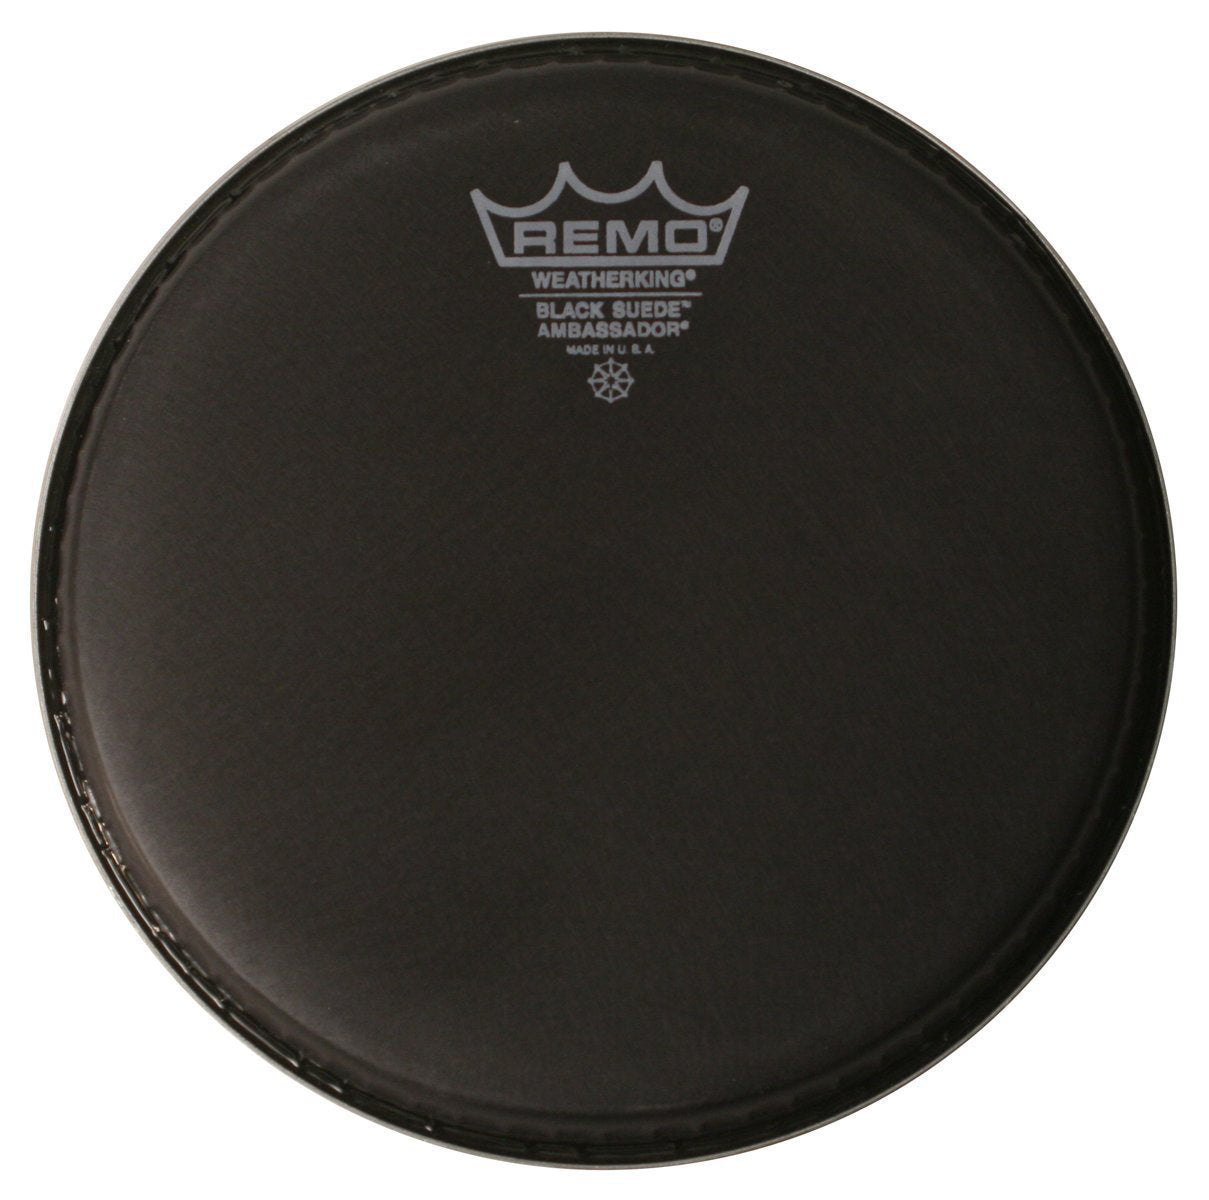 Remo 10" Black Suede Ambassador Drumhead (BA0810ES)